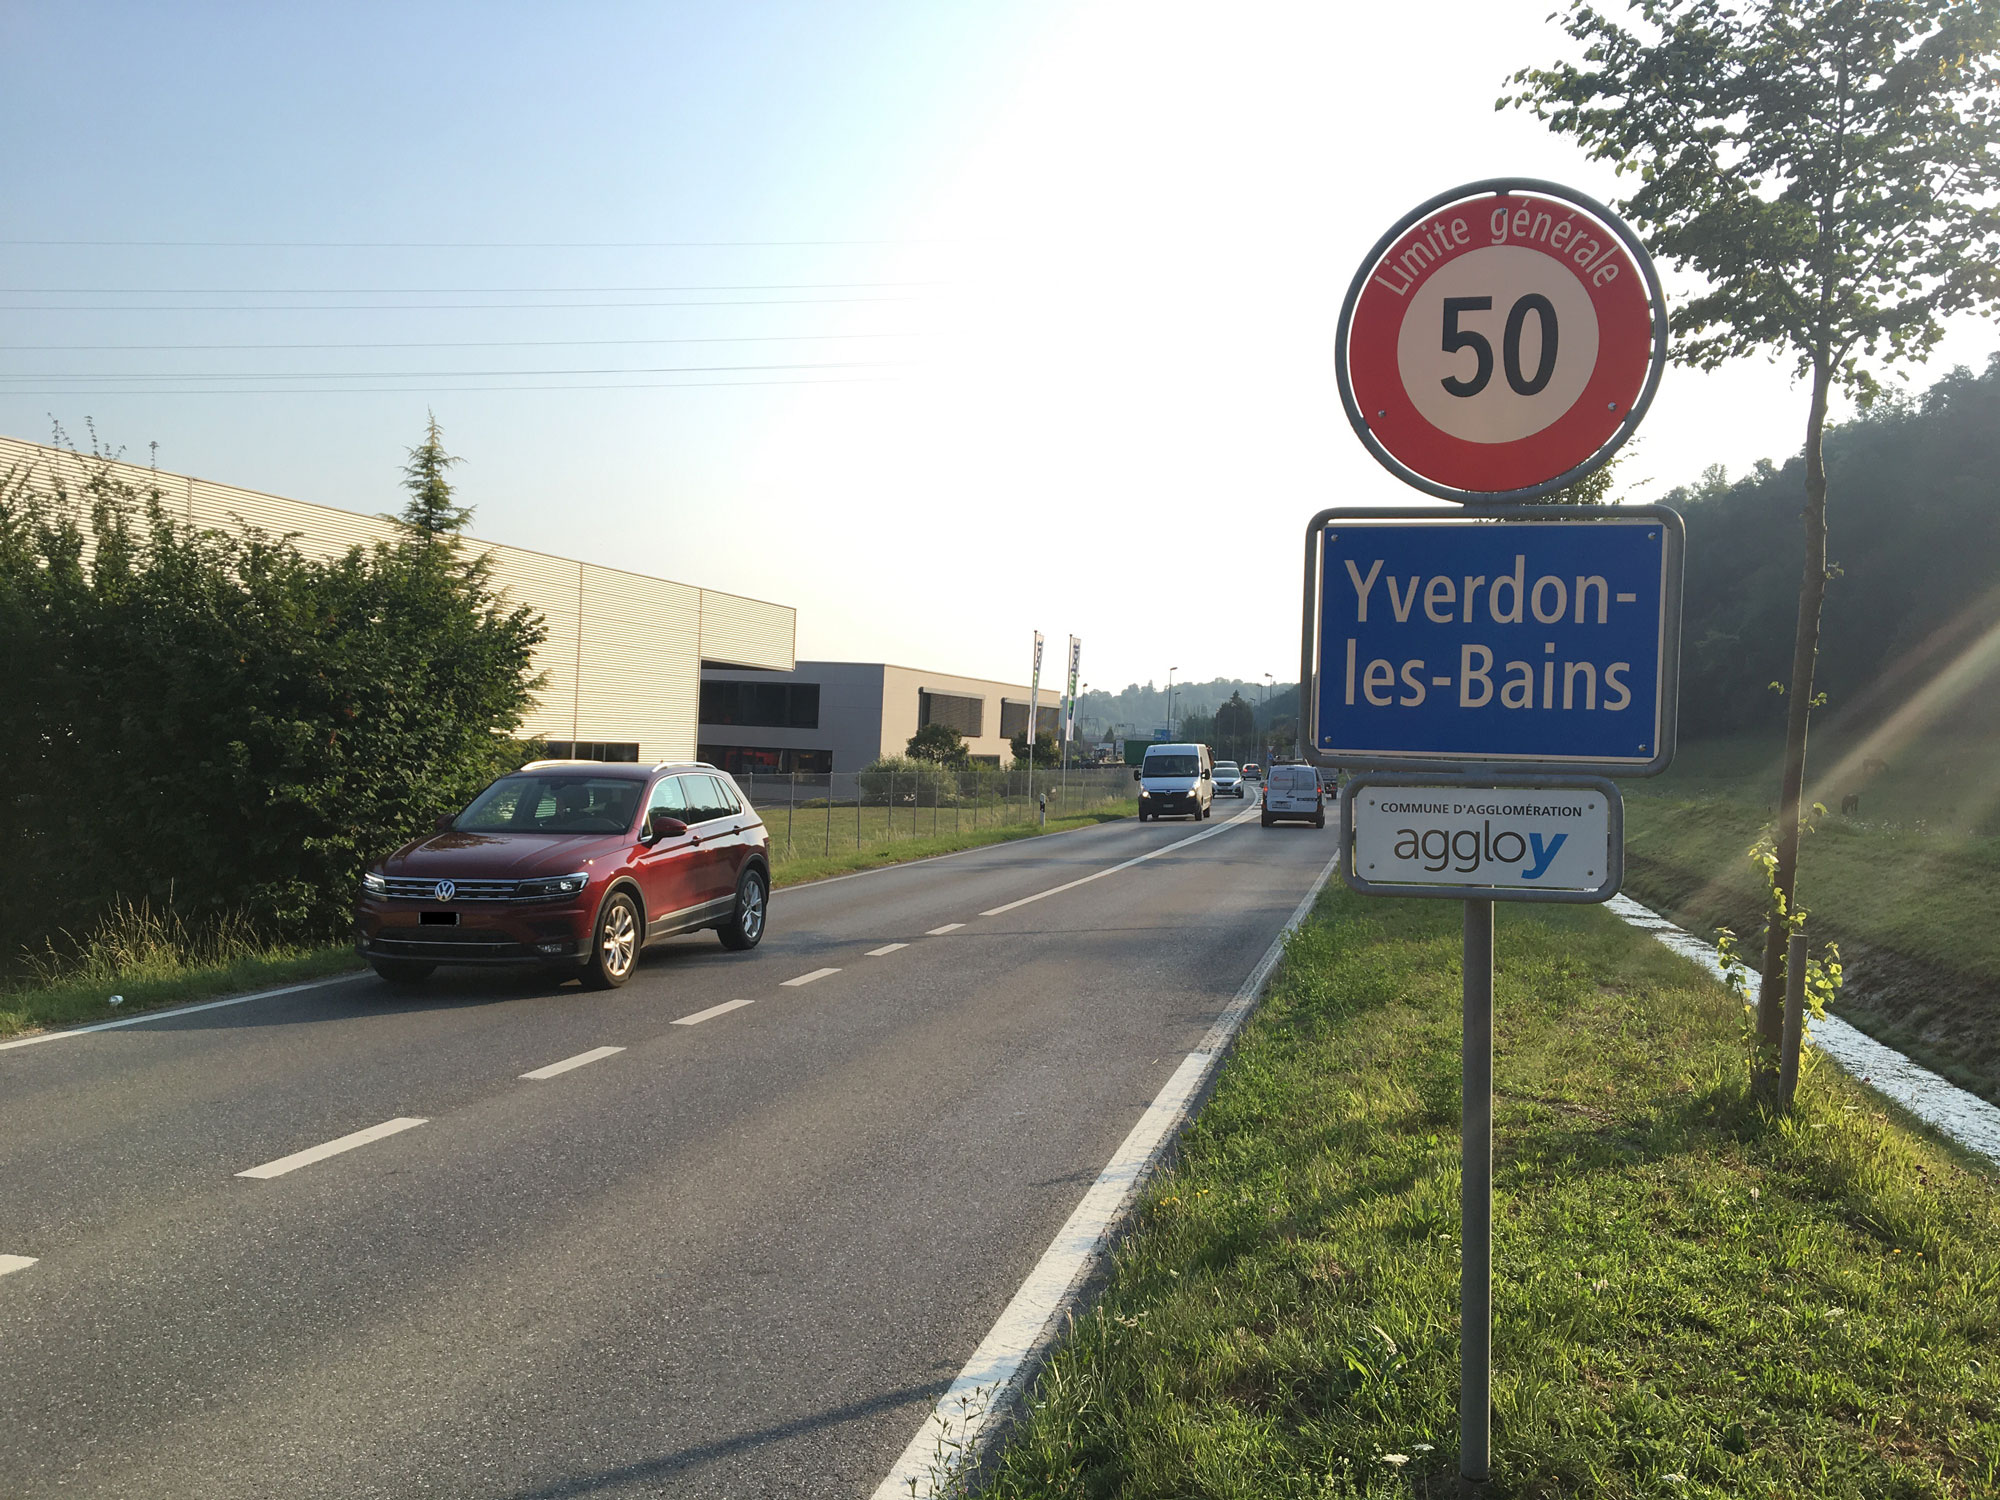 "On en parle" ramène sa fraise à Yverdon-les-Bains (VD), le lundi 23 juillet 2018.